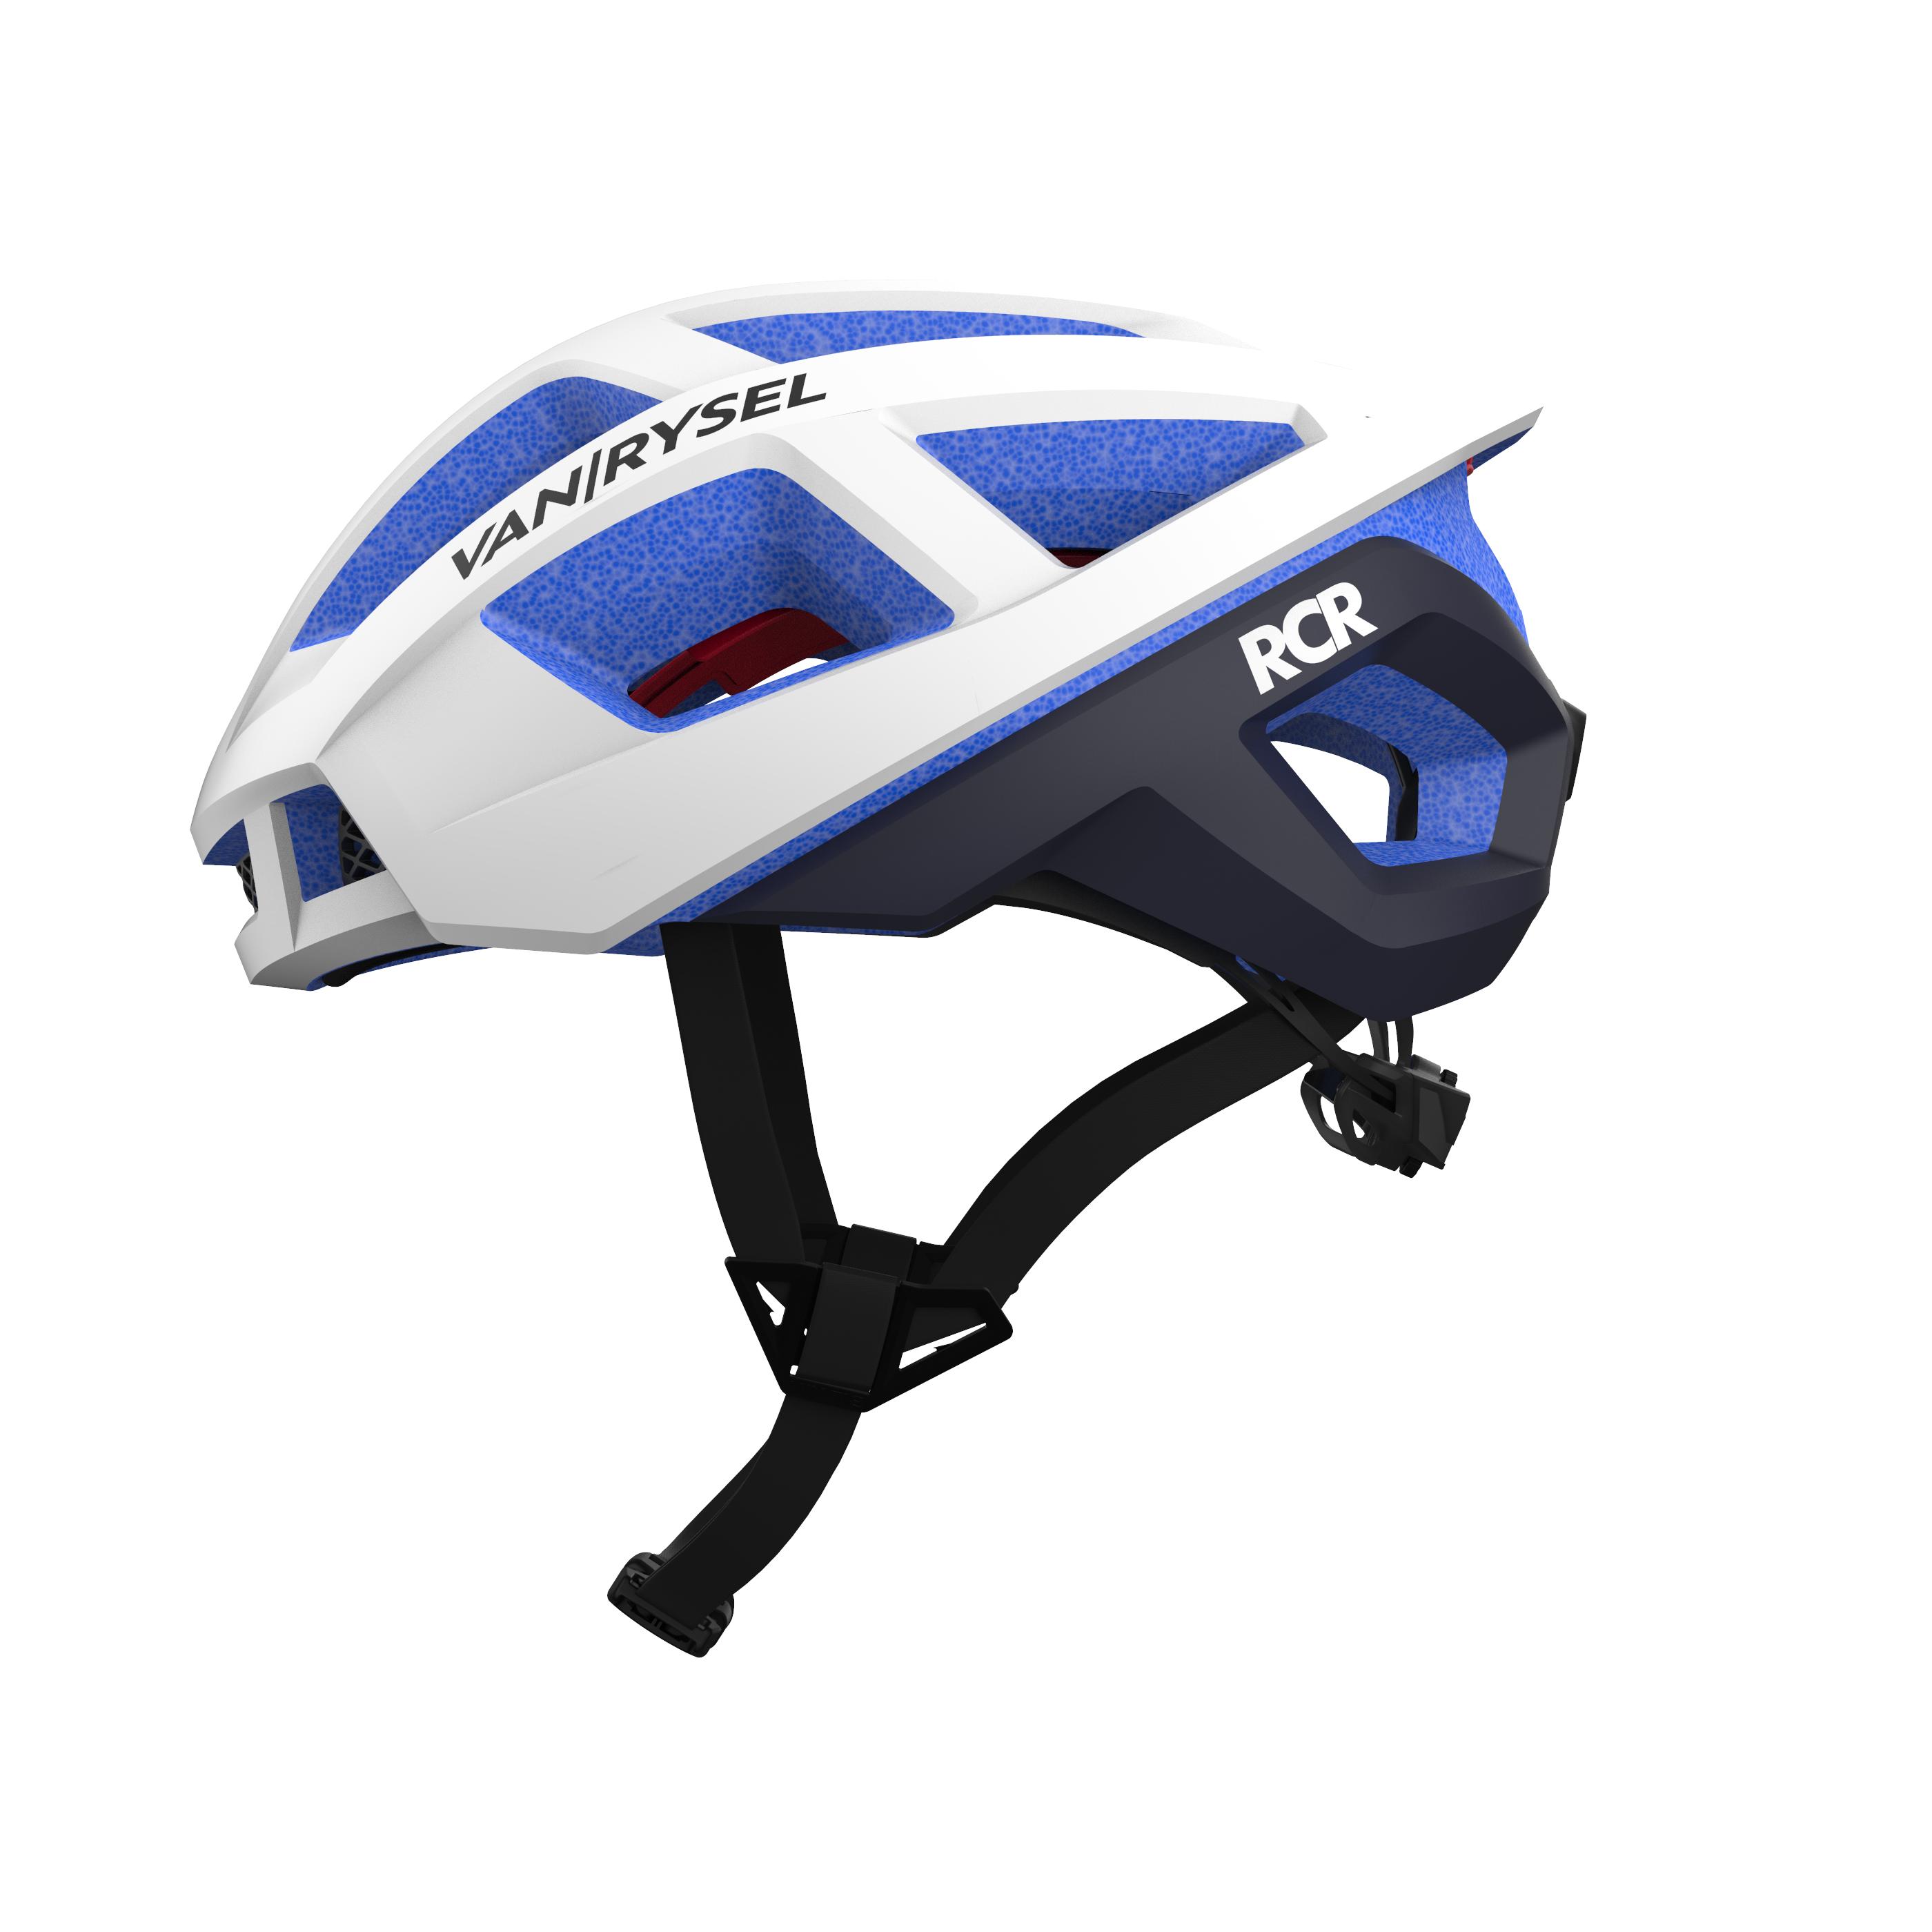 VAN RYSEL Racer Team U-19 Cycling Helmet